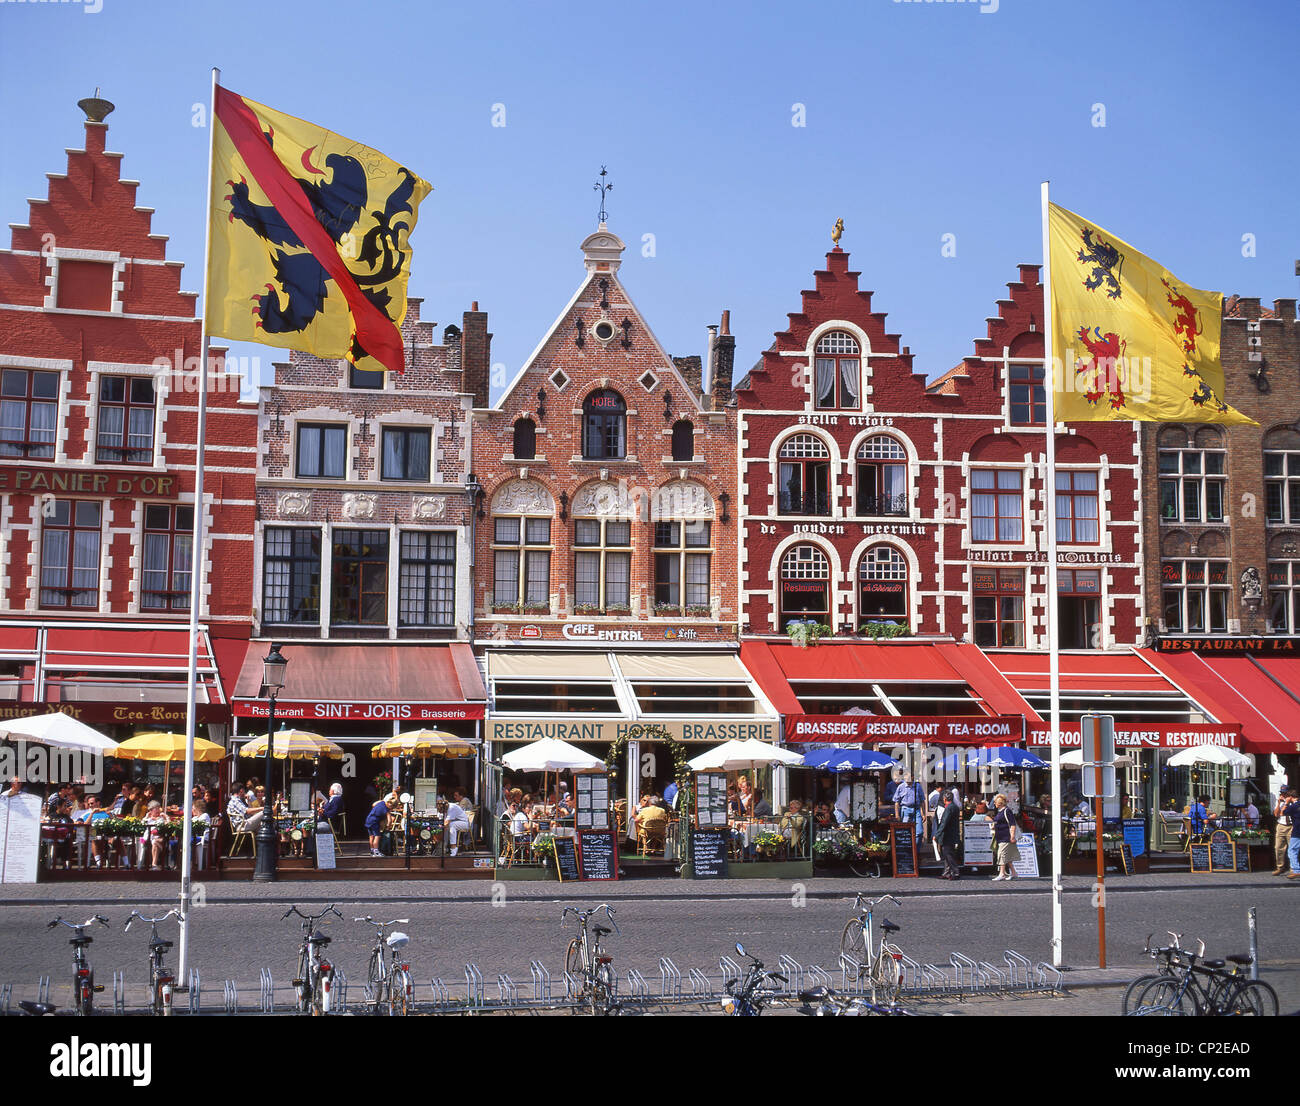 Market Square (Markt), Bruges (Brugge), West Flanders Province, Kingdom of Belgium Stock Photo